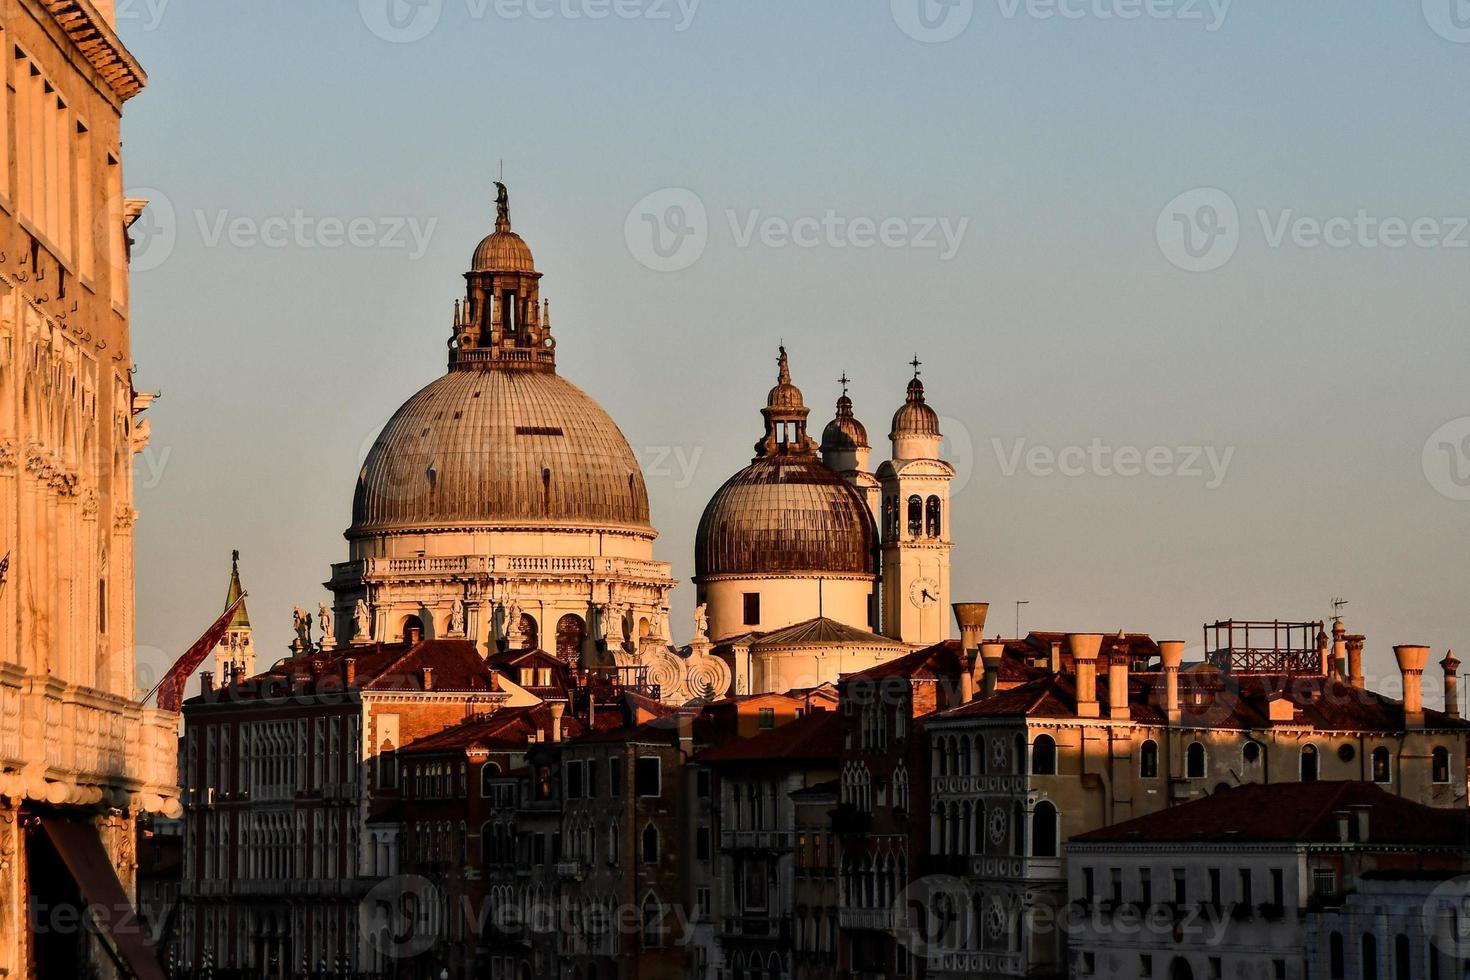 Buildings of Venezia, Italy photo